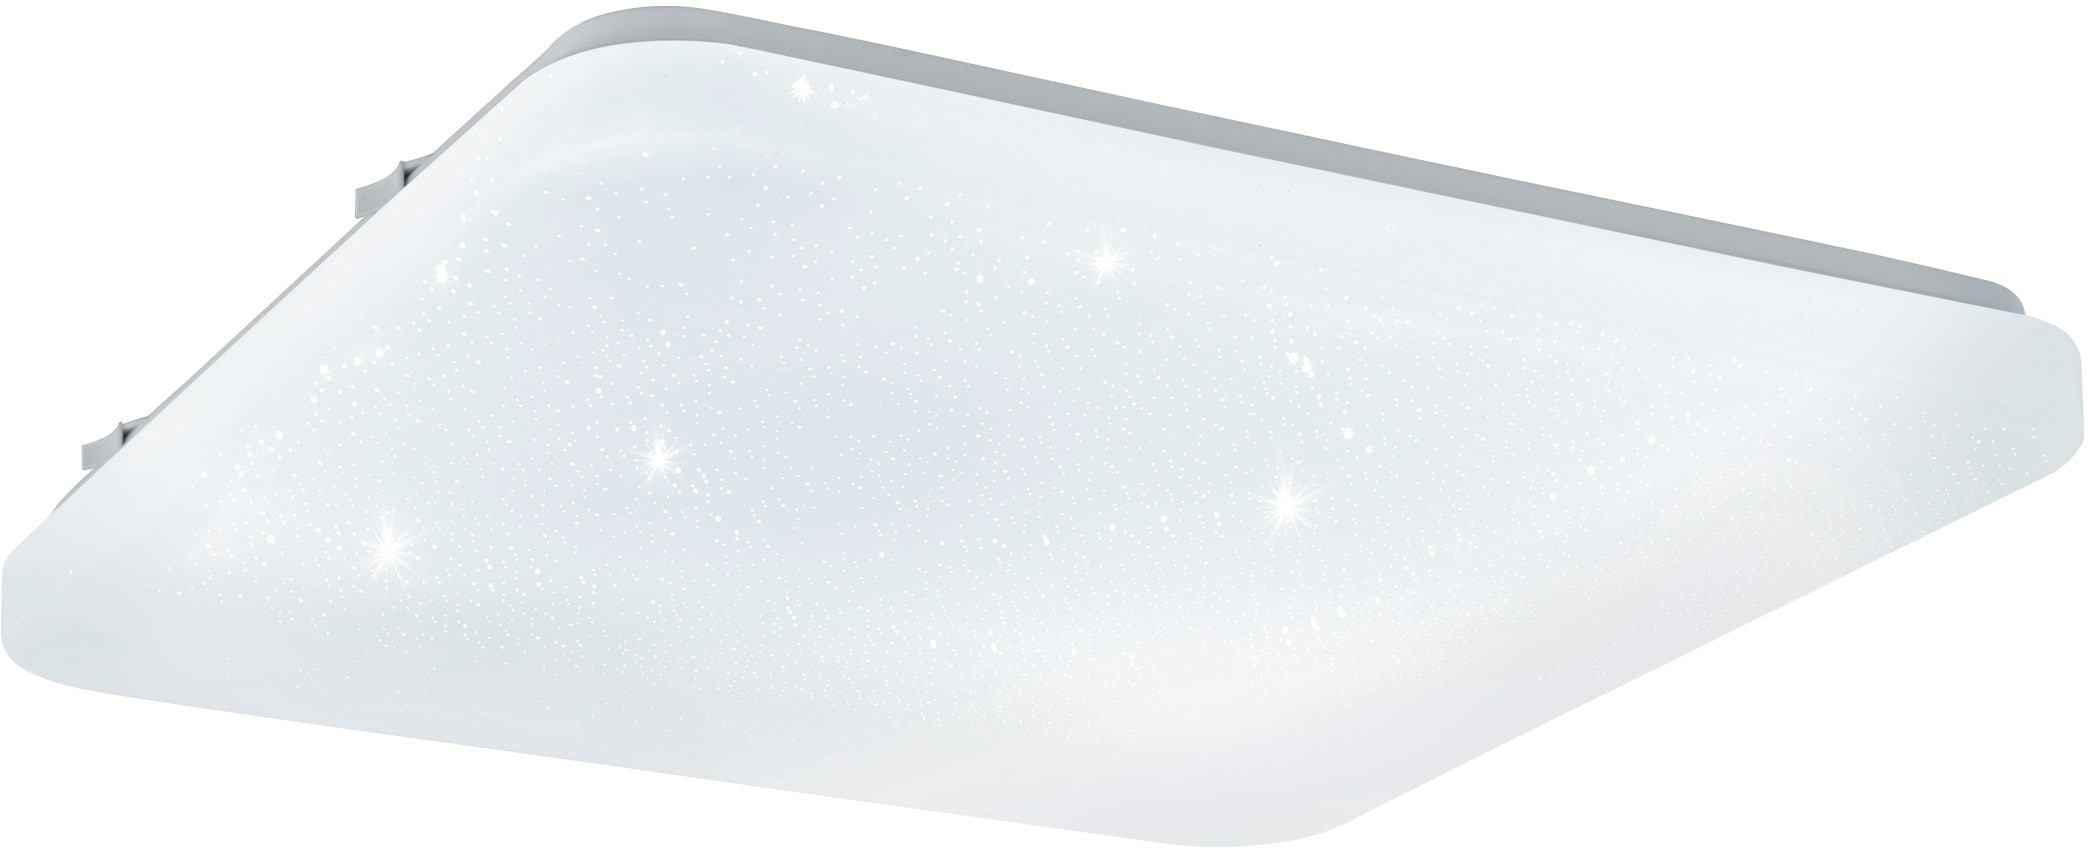 EGLO LED Deckenleuchte »FRANIA-S«, LED-Board, Warmweiß, weiß / L33 x H7 x B33 cm / inkl. 1 x LED-Platine (je 14,6W, 1600lm, 3000K) / Deckenlampe - Sternenhimmel - warmweißes Licht - Schlafzimmerlampe - Kinderzimmerlampe